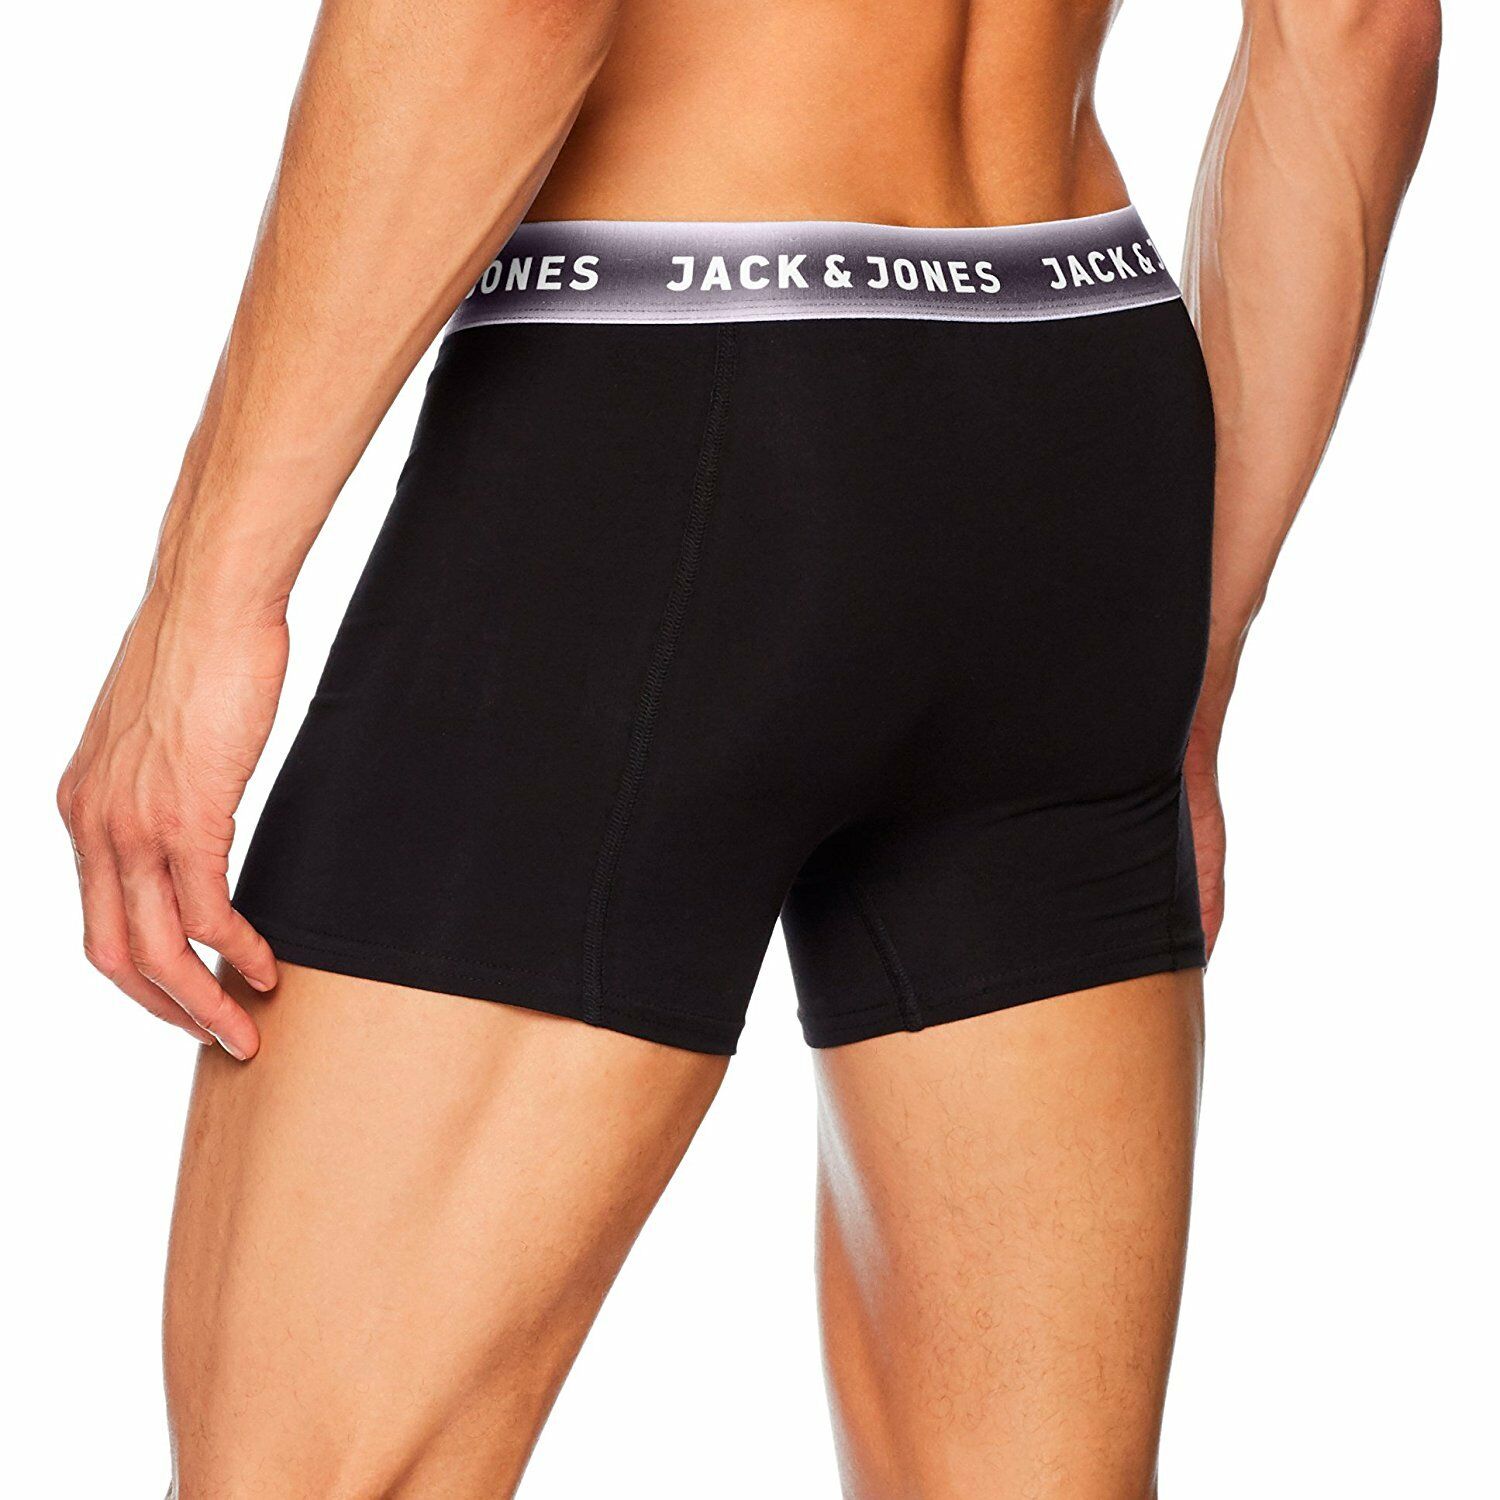 Jack & Jones Mens Jac tommy Trunks Designer Boxer Shorts Black ...